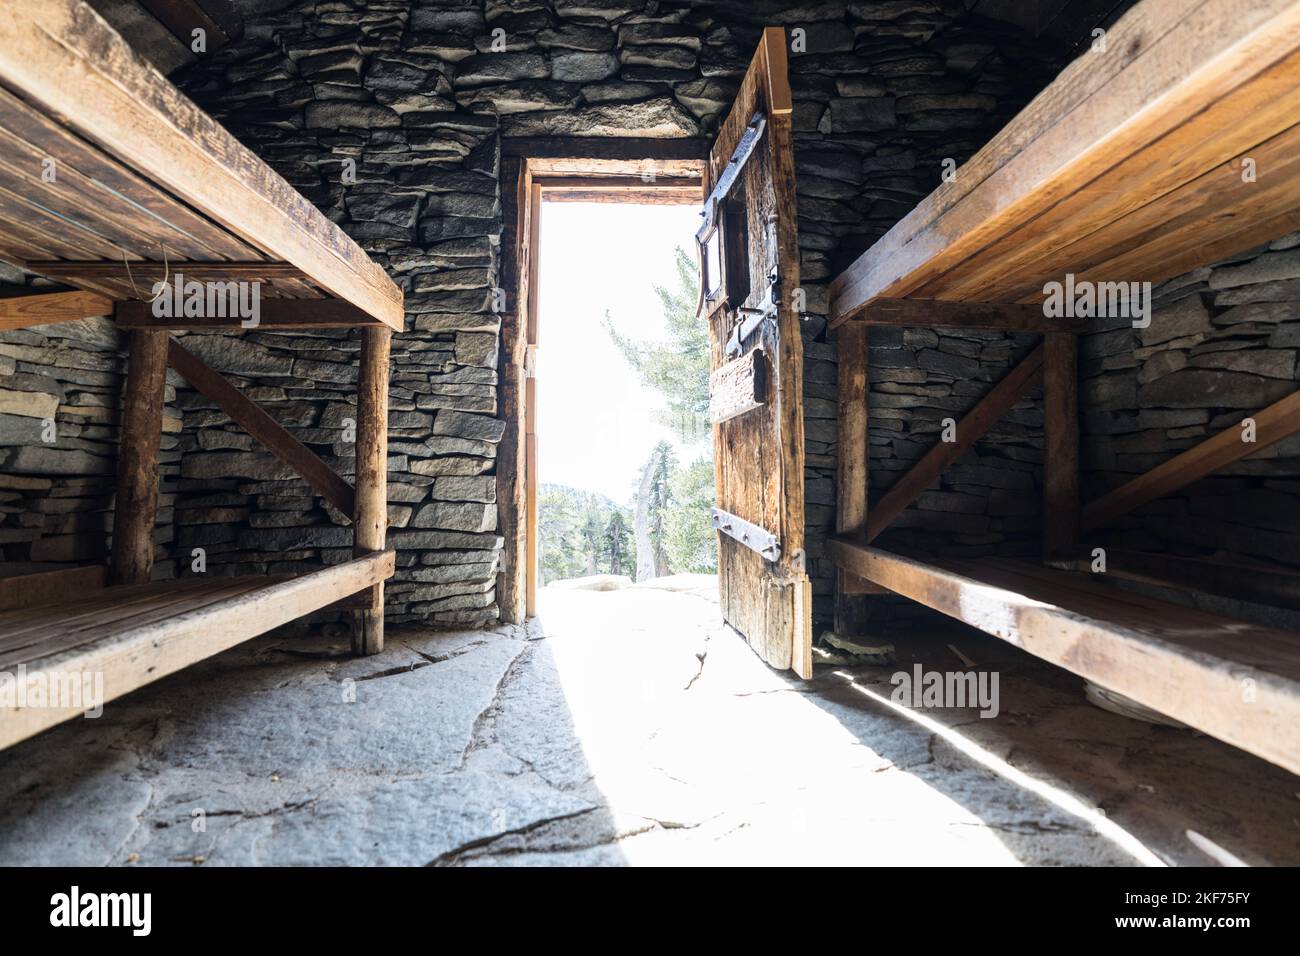 Lits superposés en bois à l'intérieur d'une cabane en pierre historique, près du sommet de San Jacinto Peak, dans le parc national des montagnes de San Jacinto, au-dessus de Palm Springs, en Californie. Banque D'Images